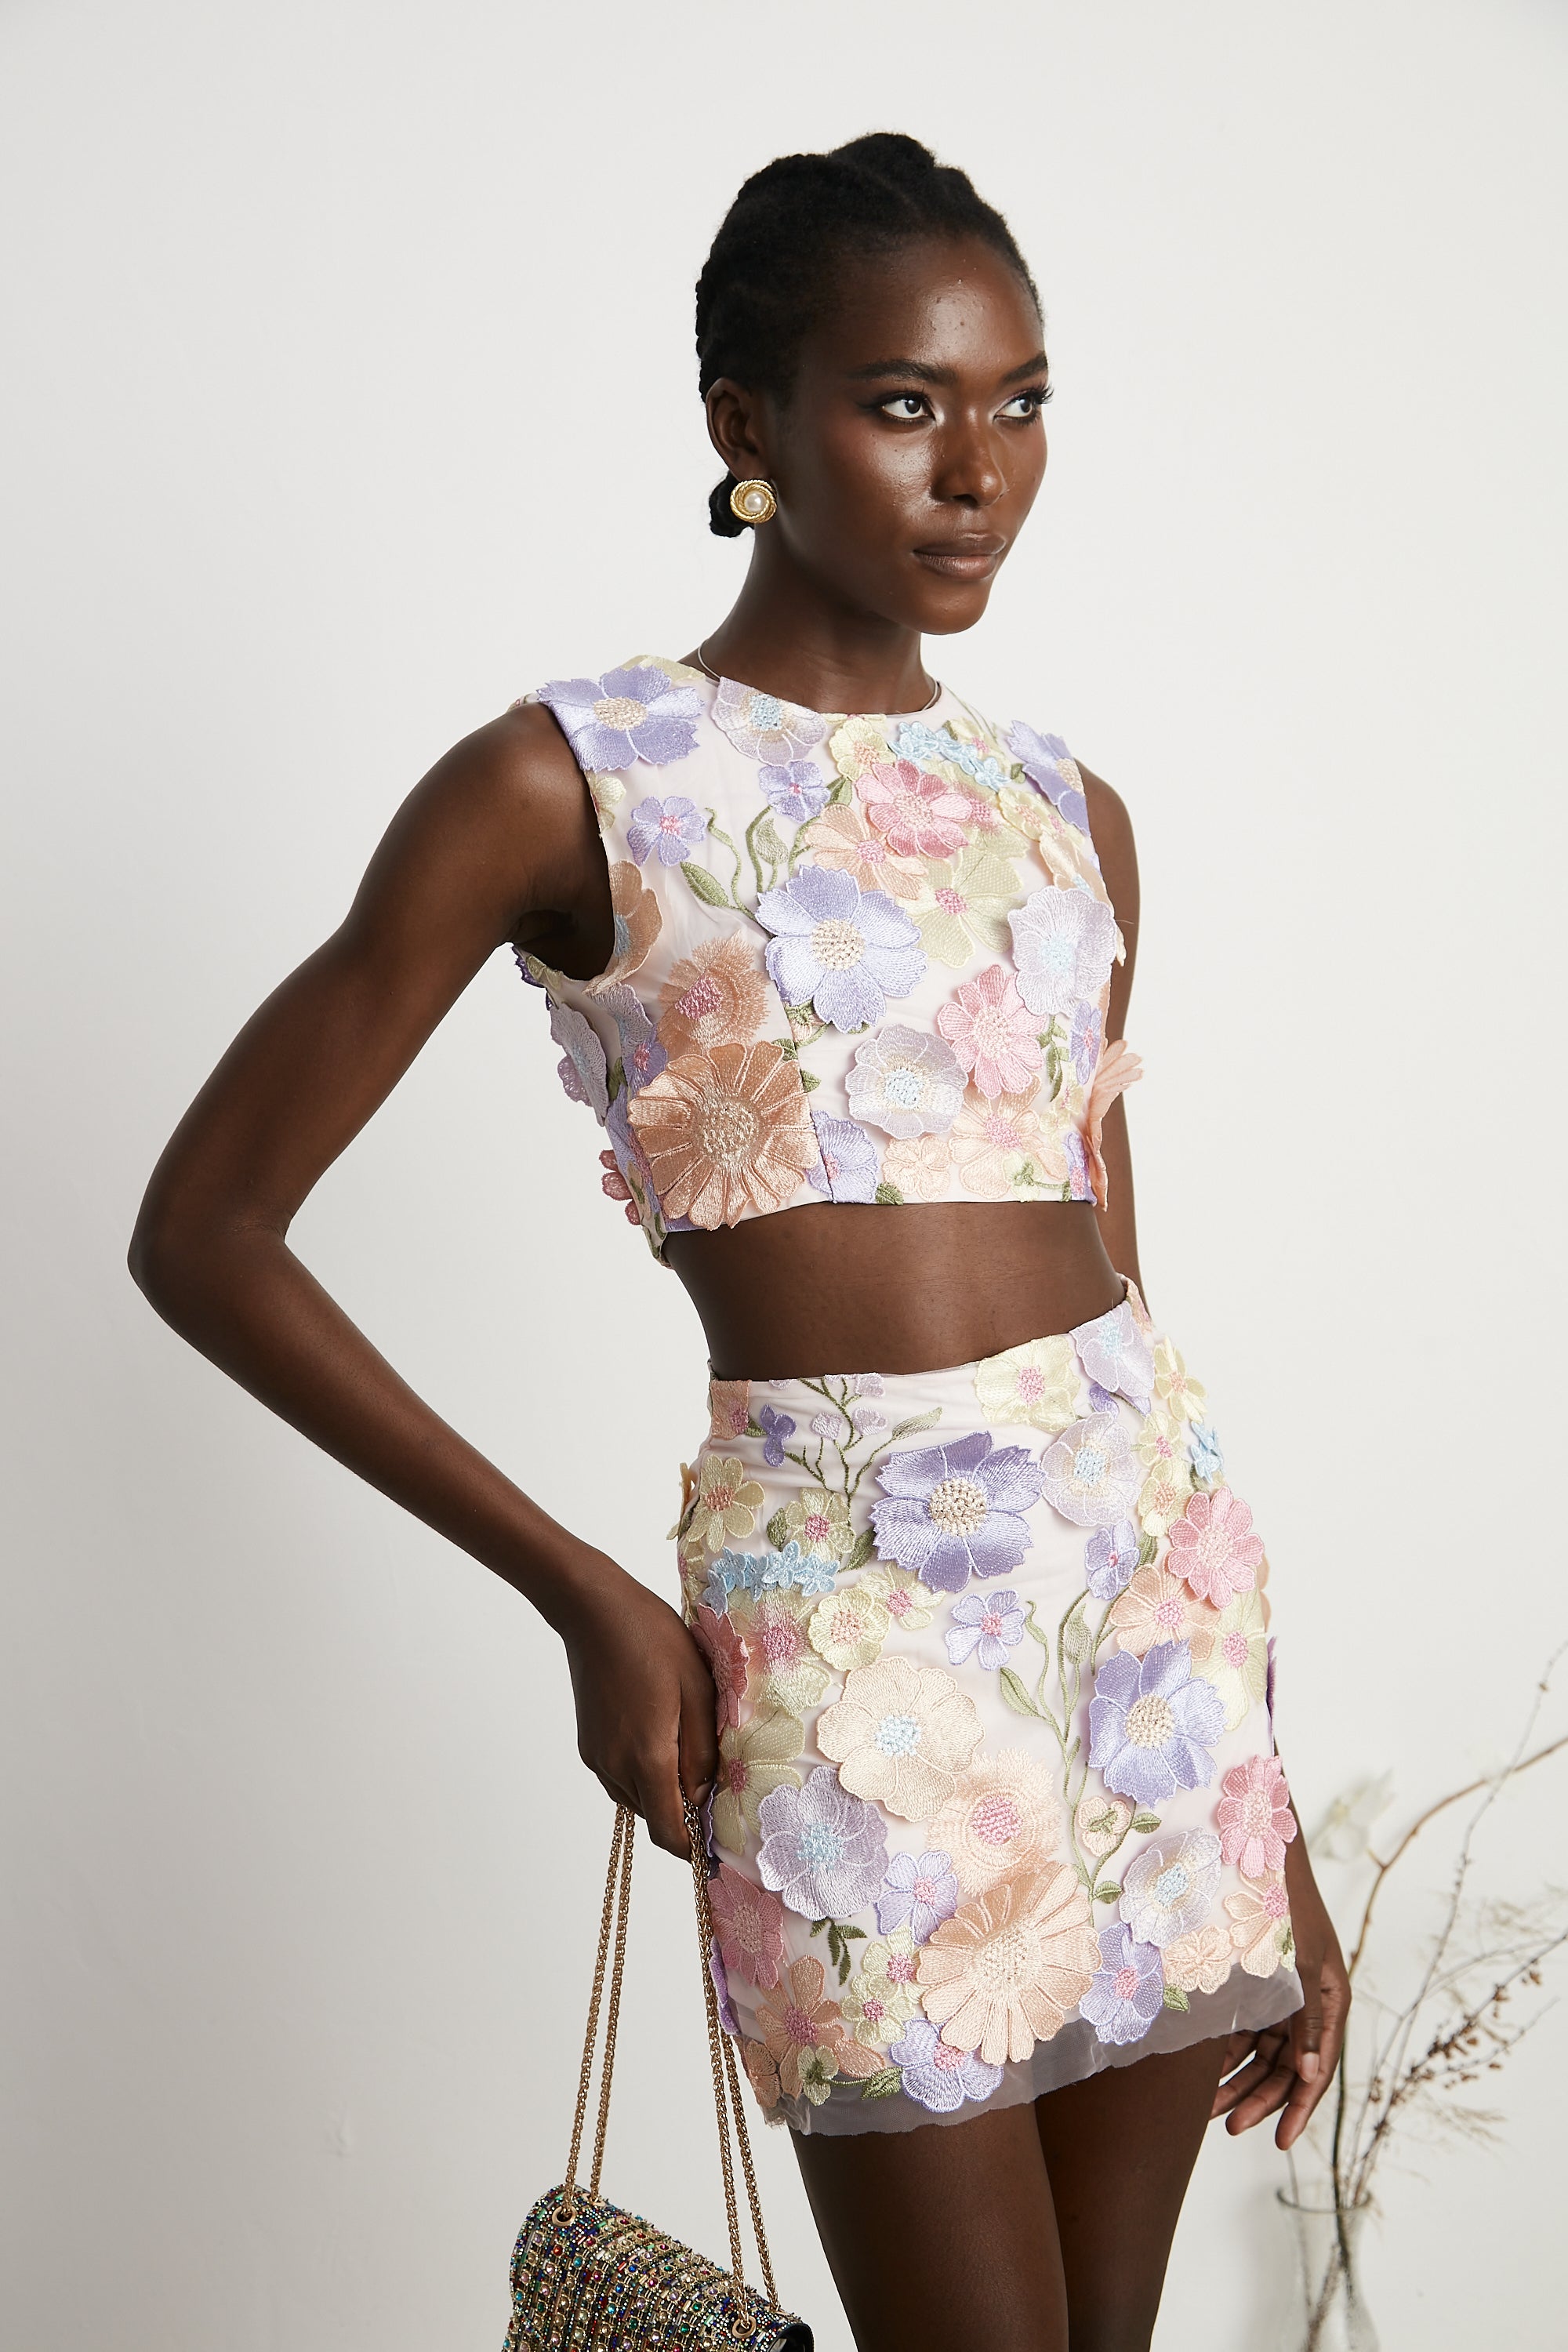 Malika petal embroidered top & skirt matching set